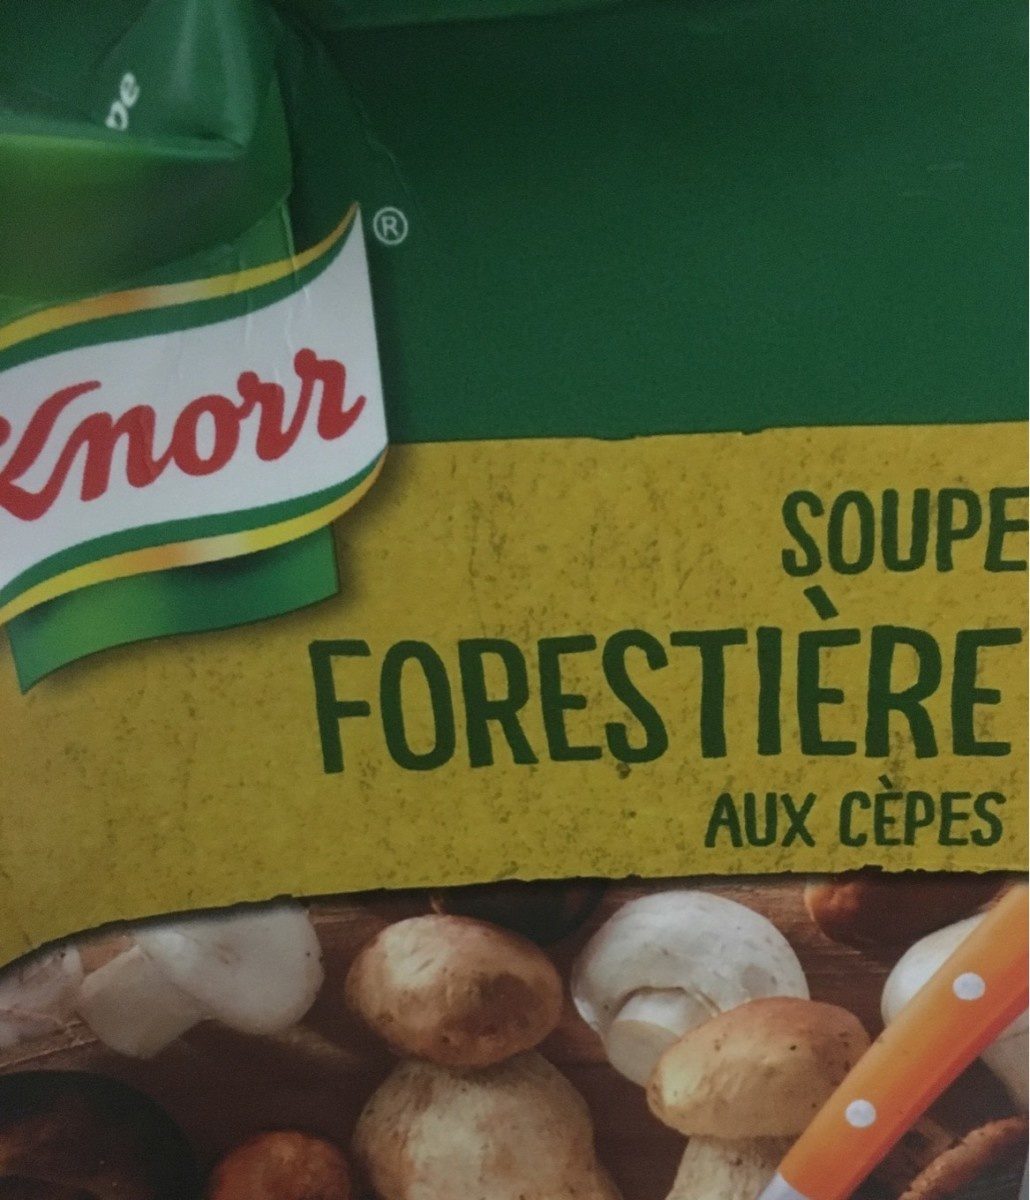 Soupe forestiere aux cepes - Produit